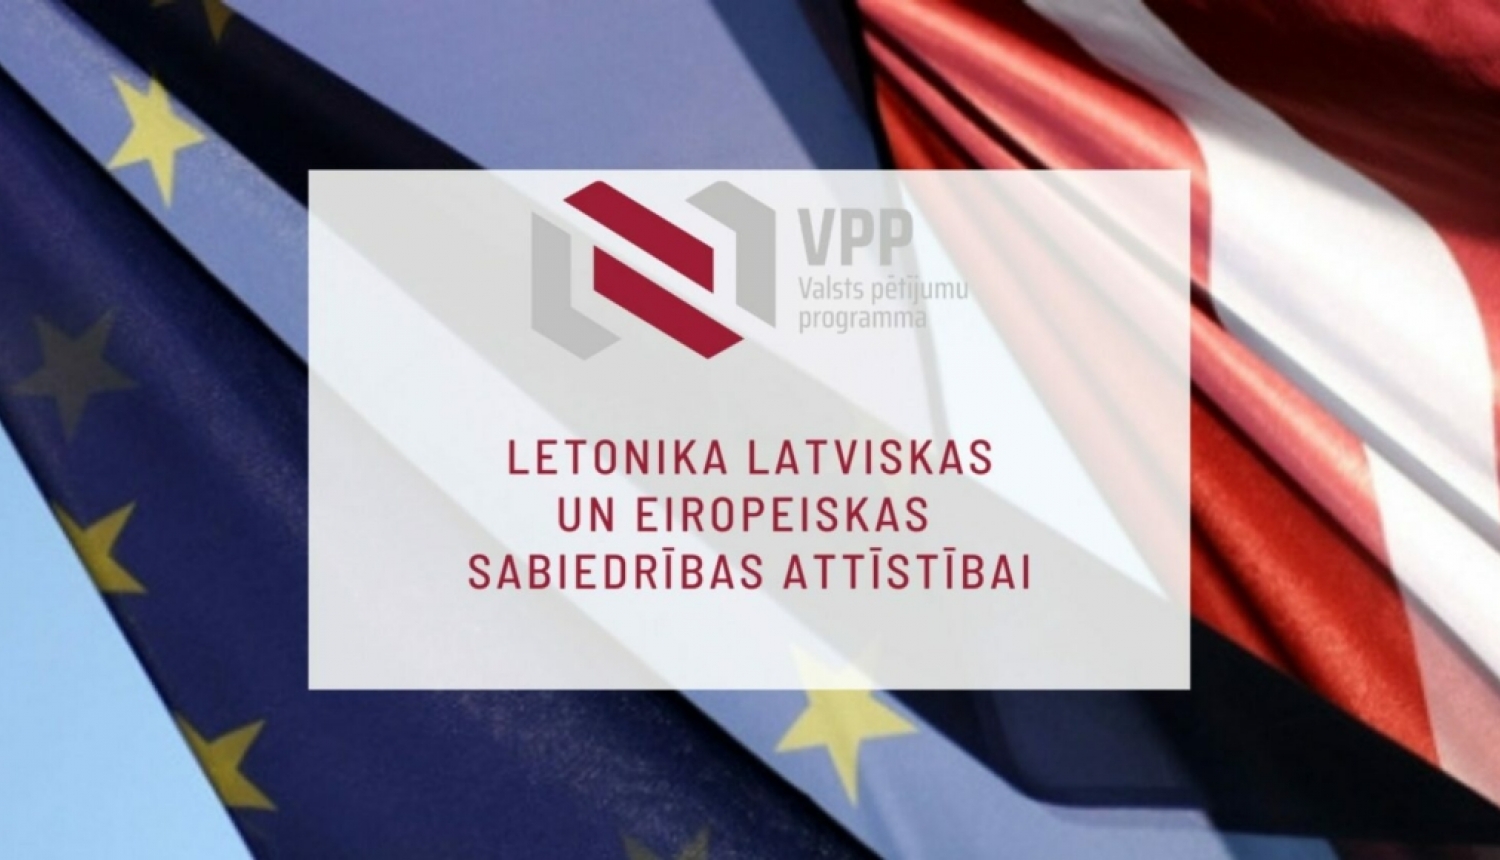 Norisinājies informatīvais tiešsaistes vebinārs un kontaktbirža VPP projektu konkursa “Letonika latviskas un eiropeiskas sabiedrības attīstībai” projektu iesniedzējiem.